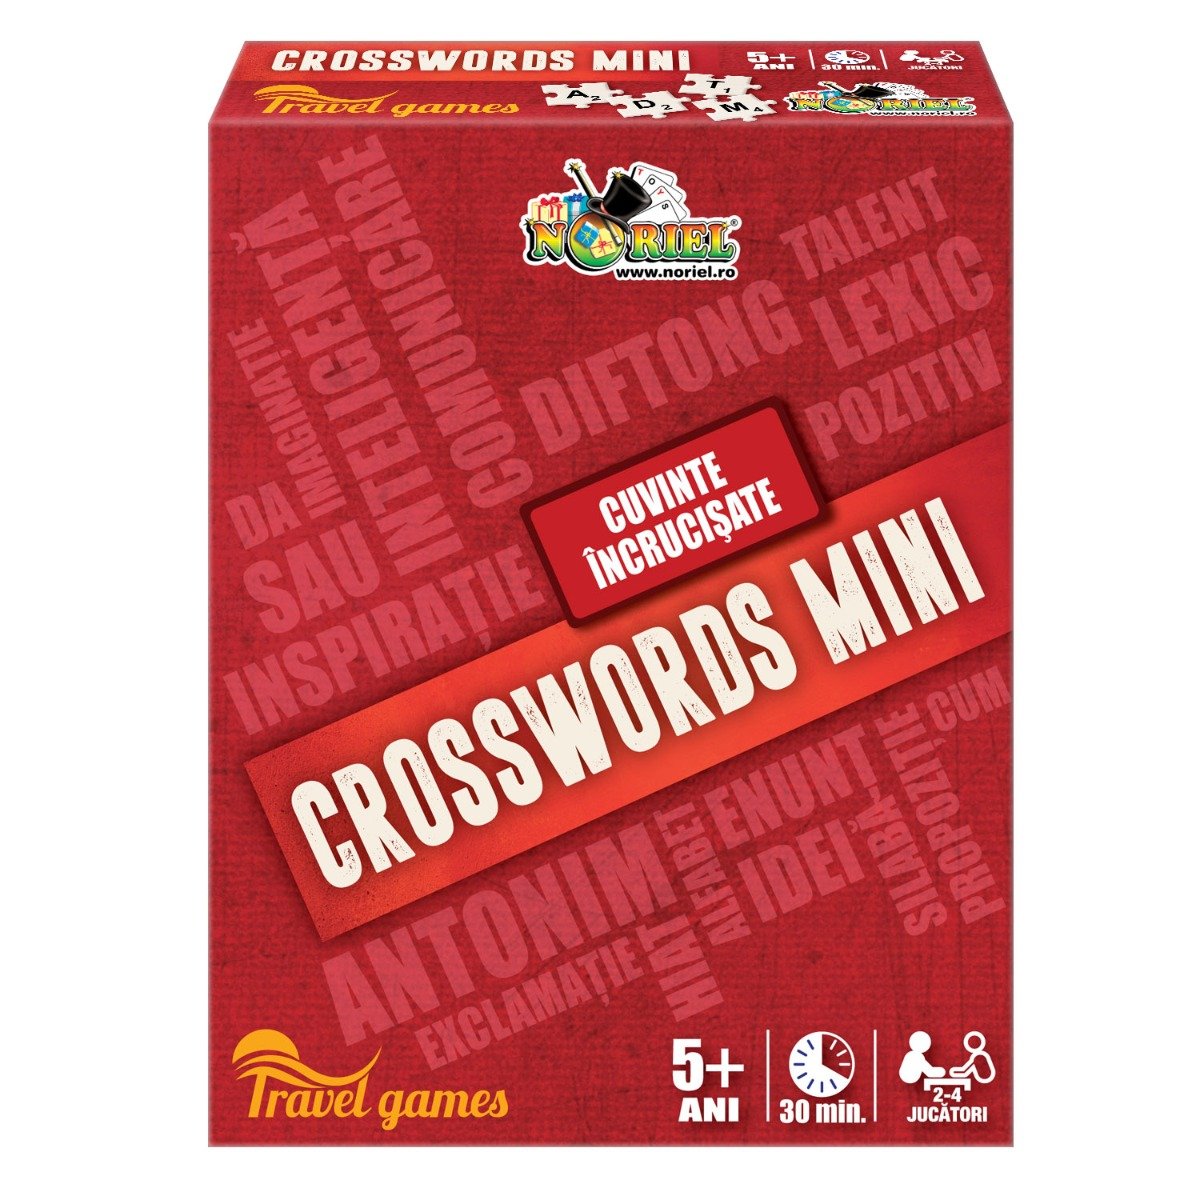 Joc de societate Crosswords Mini Noriel